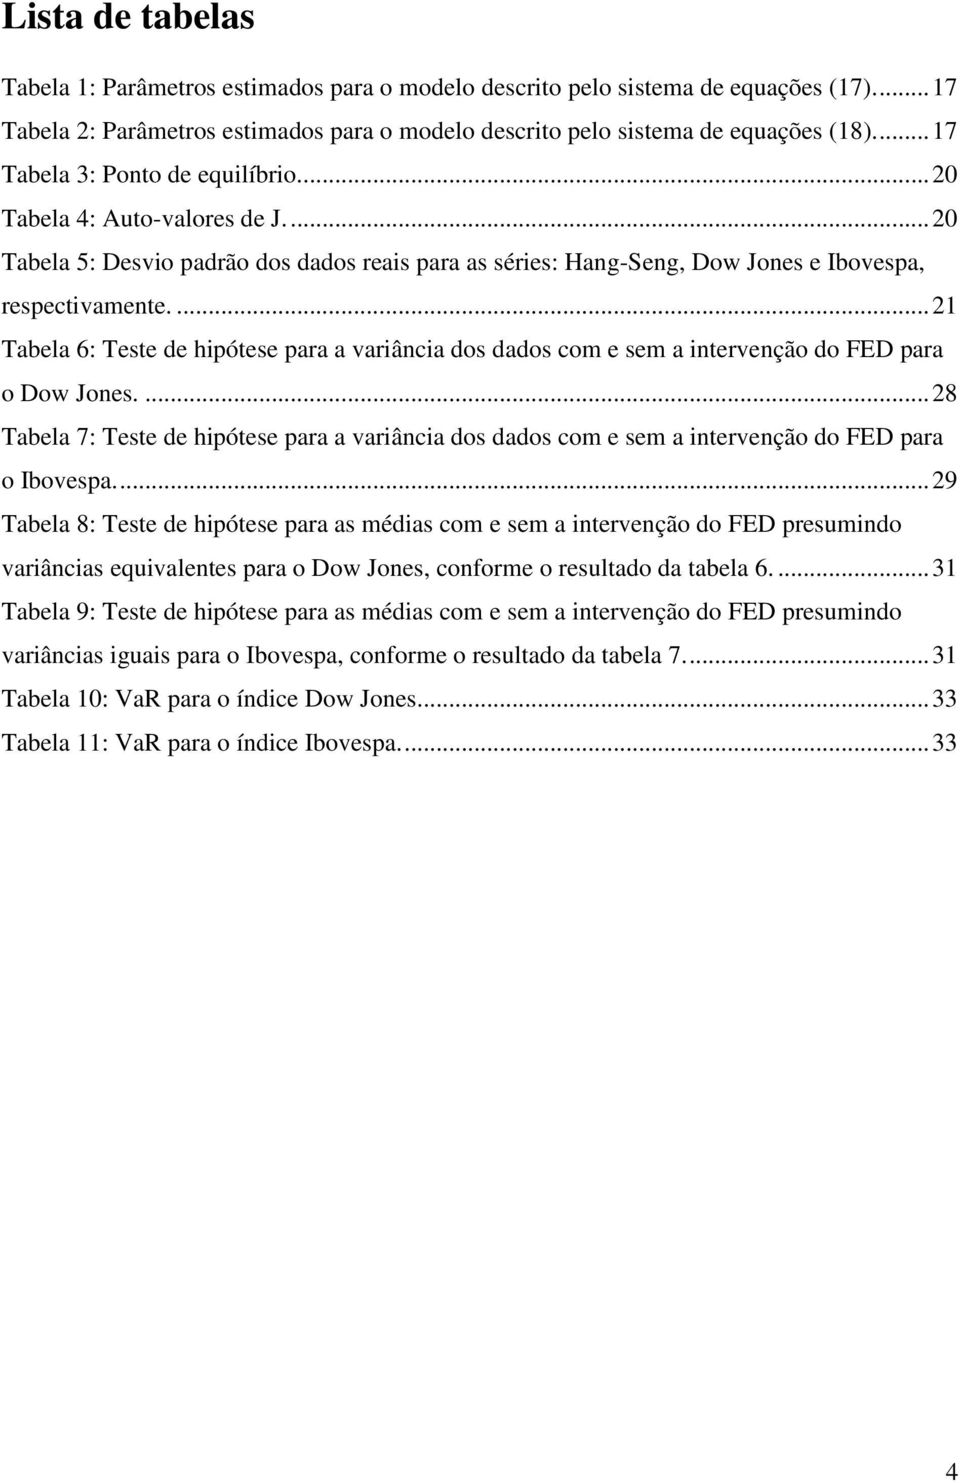 ... 21 Tabela 6: Teste de hipótese para a variância dos dados com e sem a intervenção do FED para o Dow Jones.